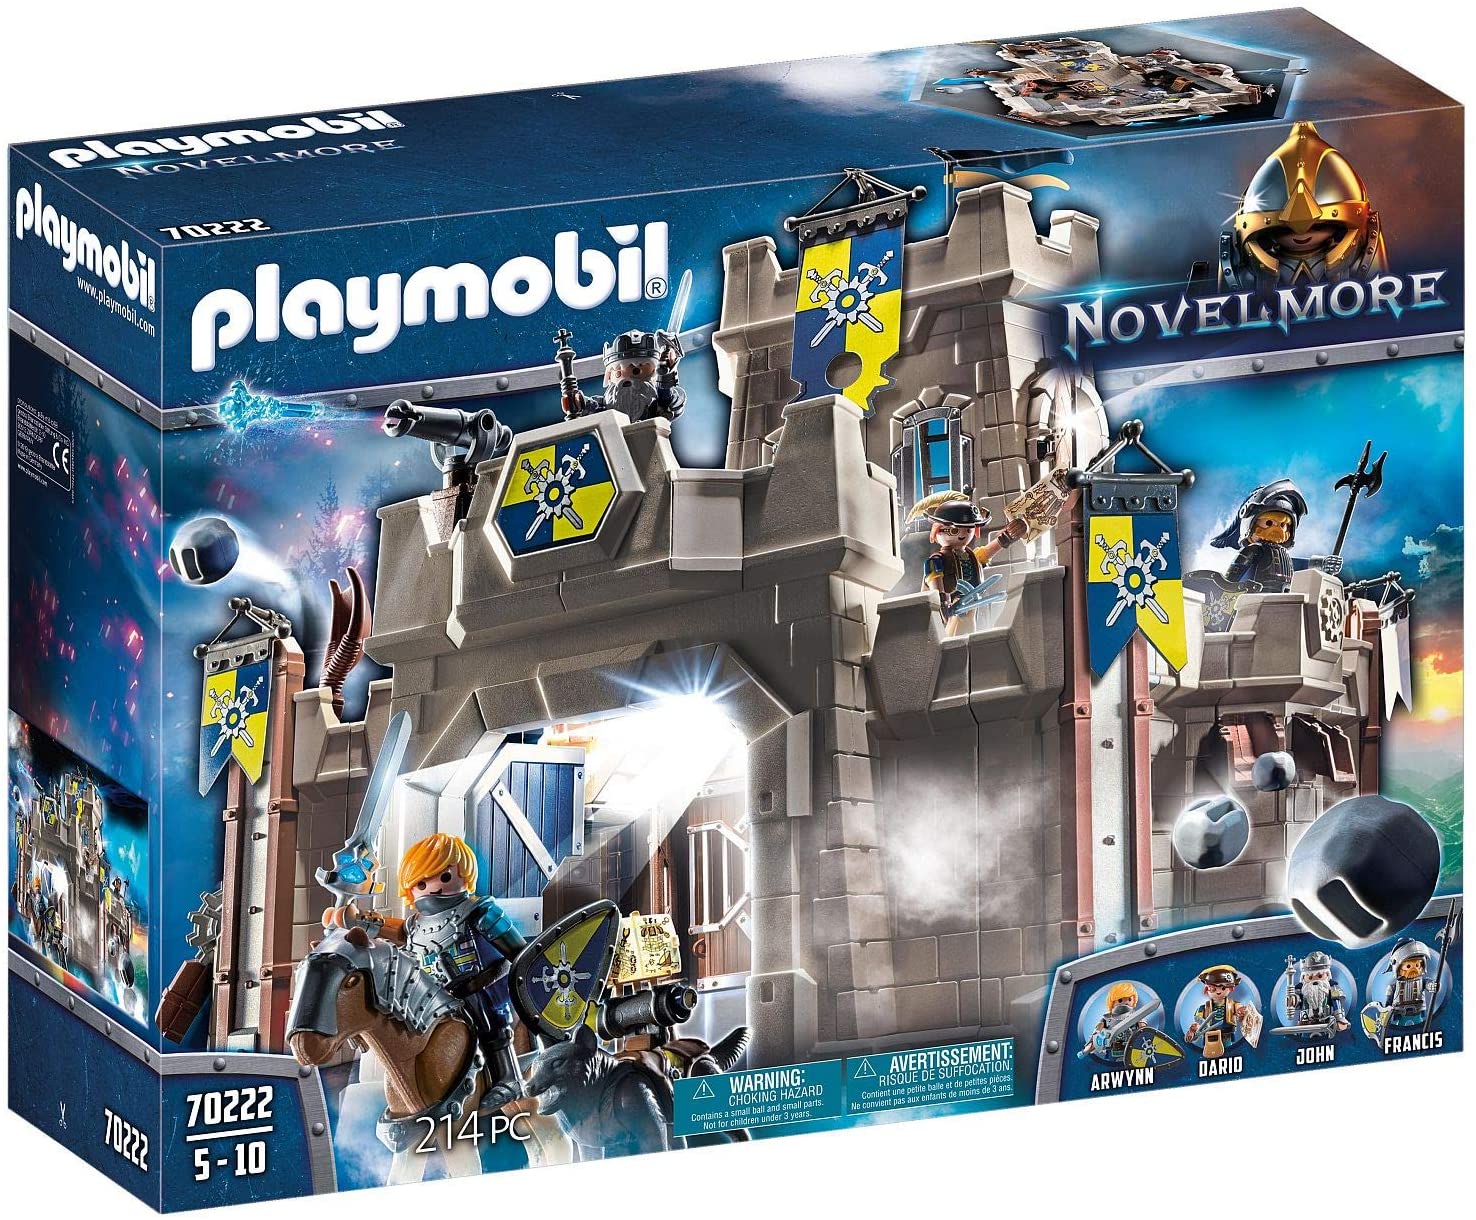 Playmobil 70222 Toy